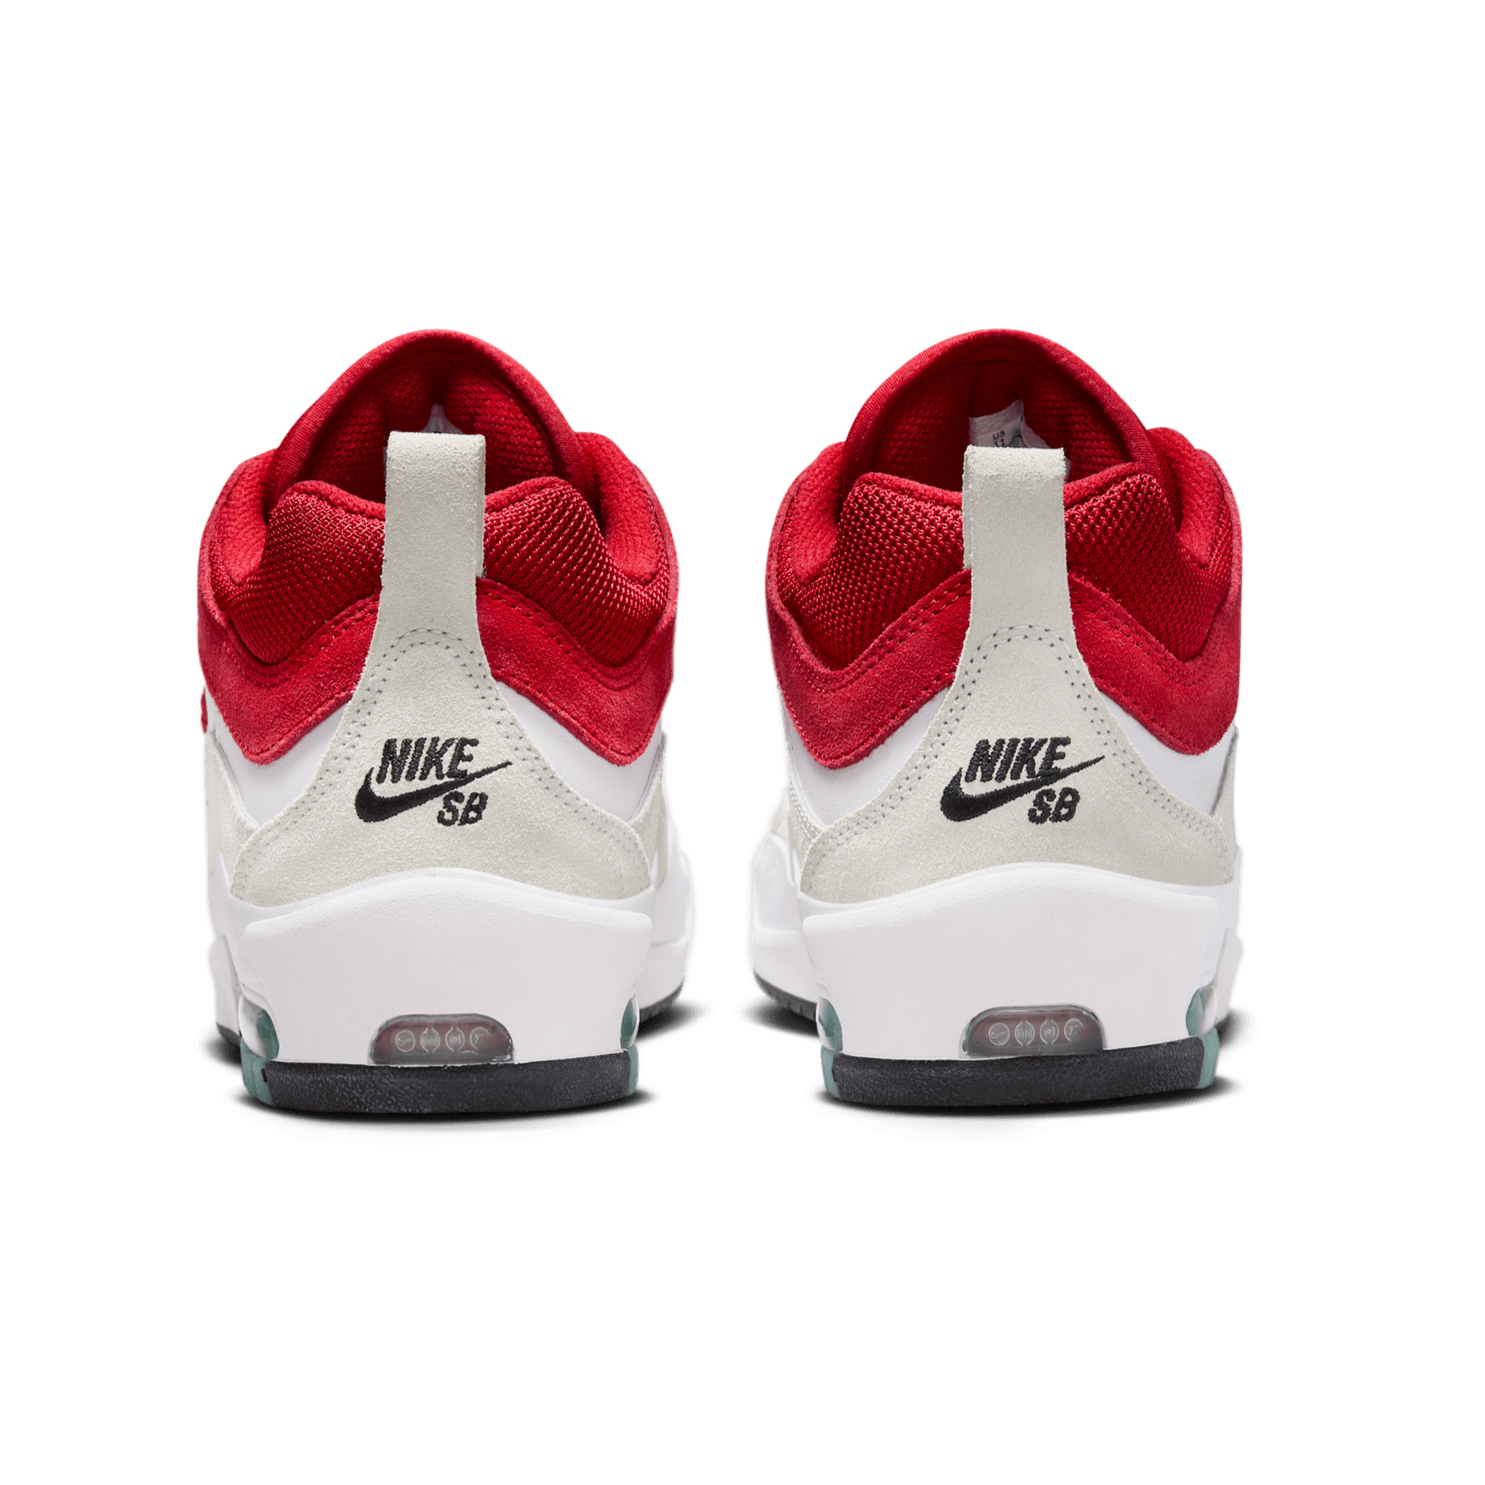 White/Varsity Red Air Max Ishod Wair Nike SB Skate Shoe Back